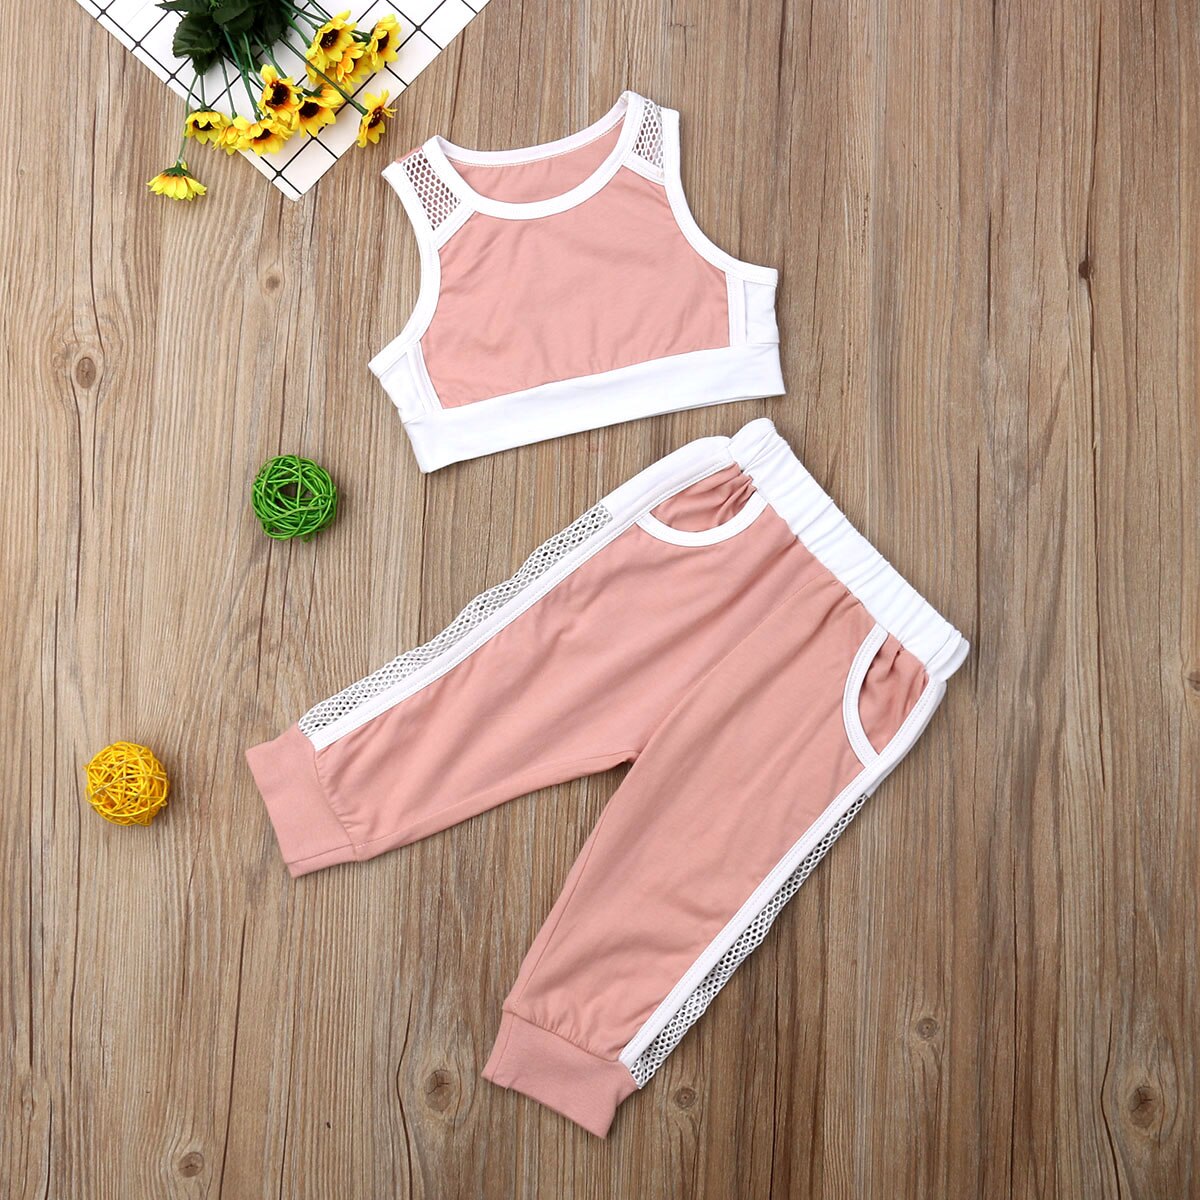 Sommer toddler piger tøj sæt sport vest tank tops + lange bukser outfits sæt træningsdragt